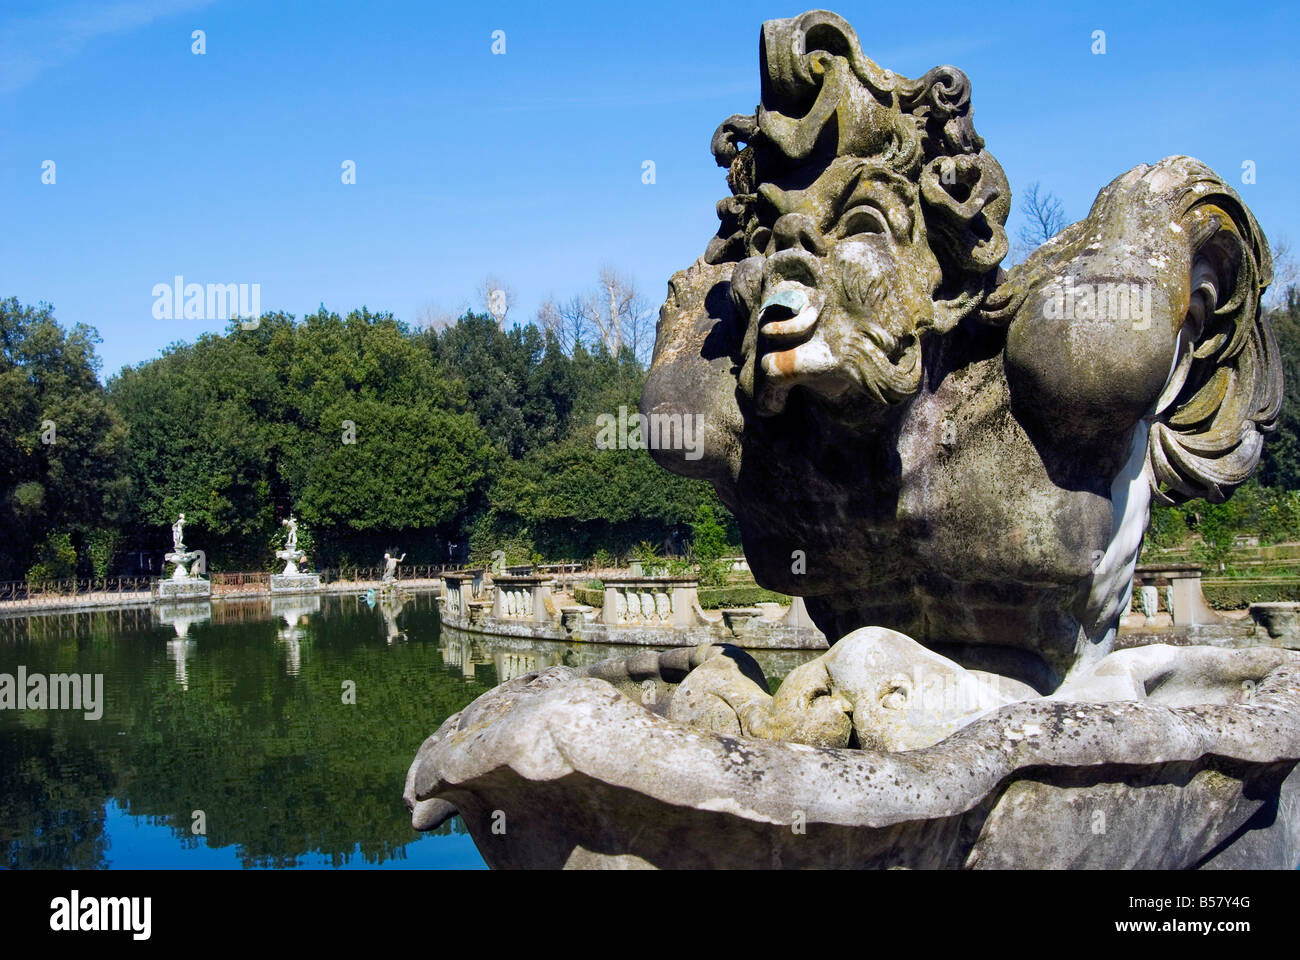 Vasca dell'Isola (Island's Pond), Harpy's Fountain, Boboli Gardens, Florence, Tuscany, Italy, Europe Stock Photo